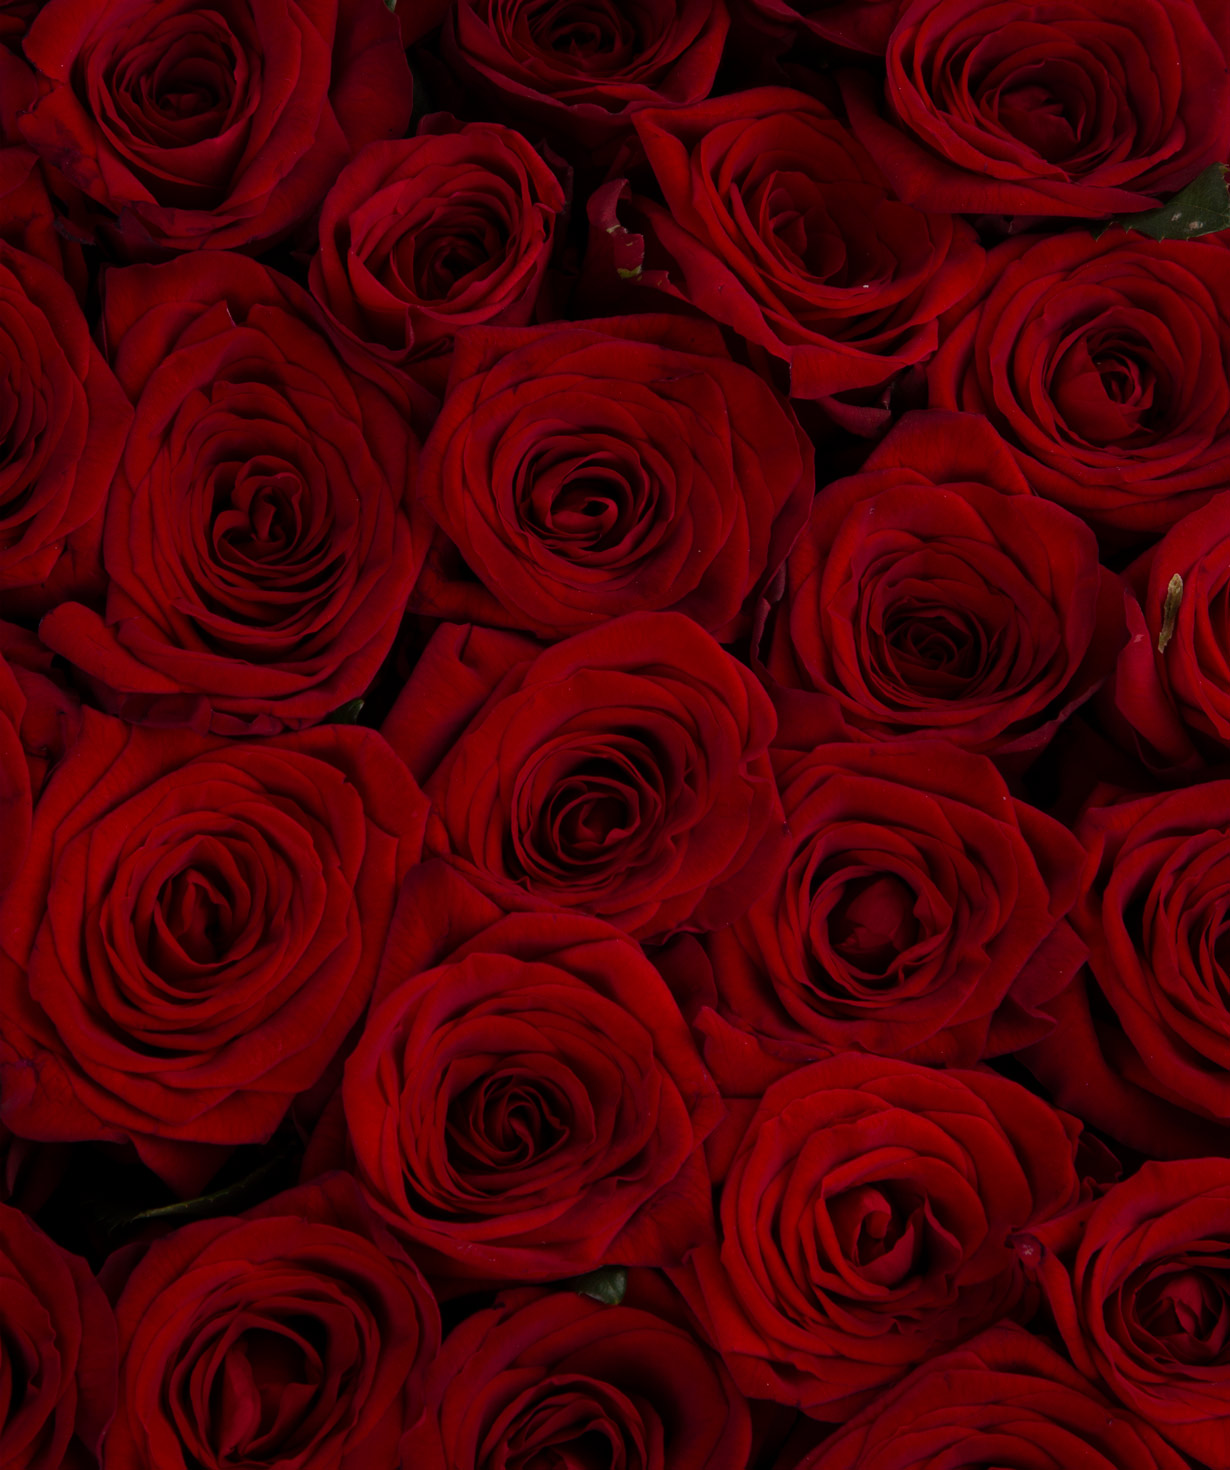 Композиция ''Рогуди'' с розами красными